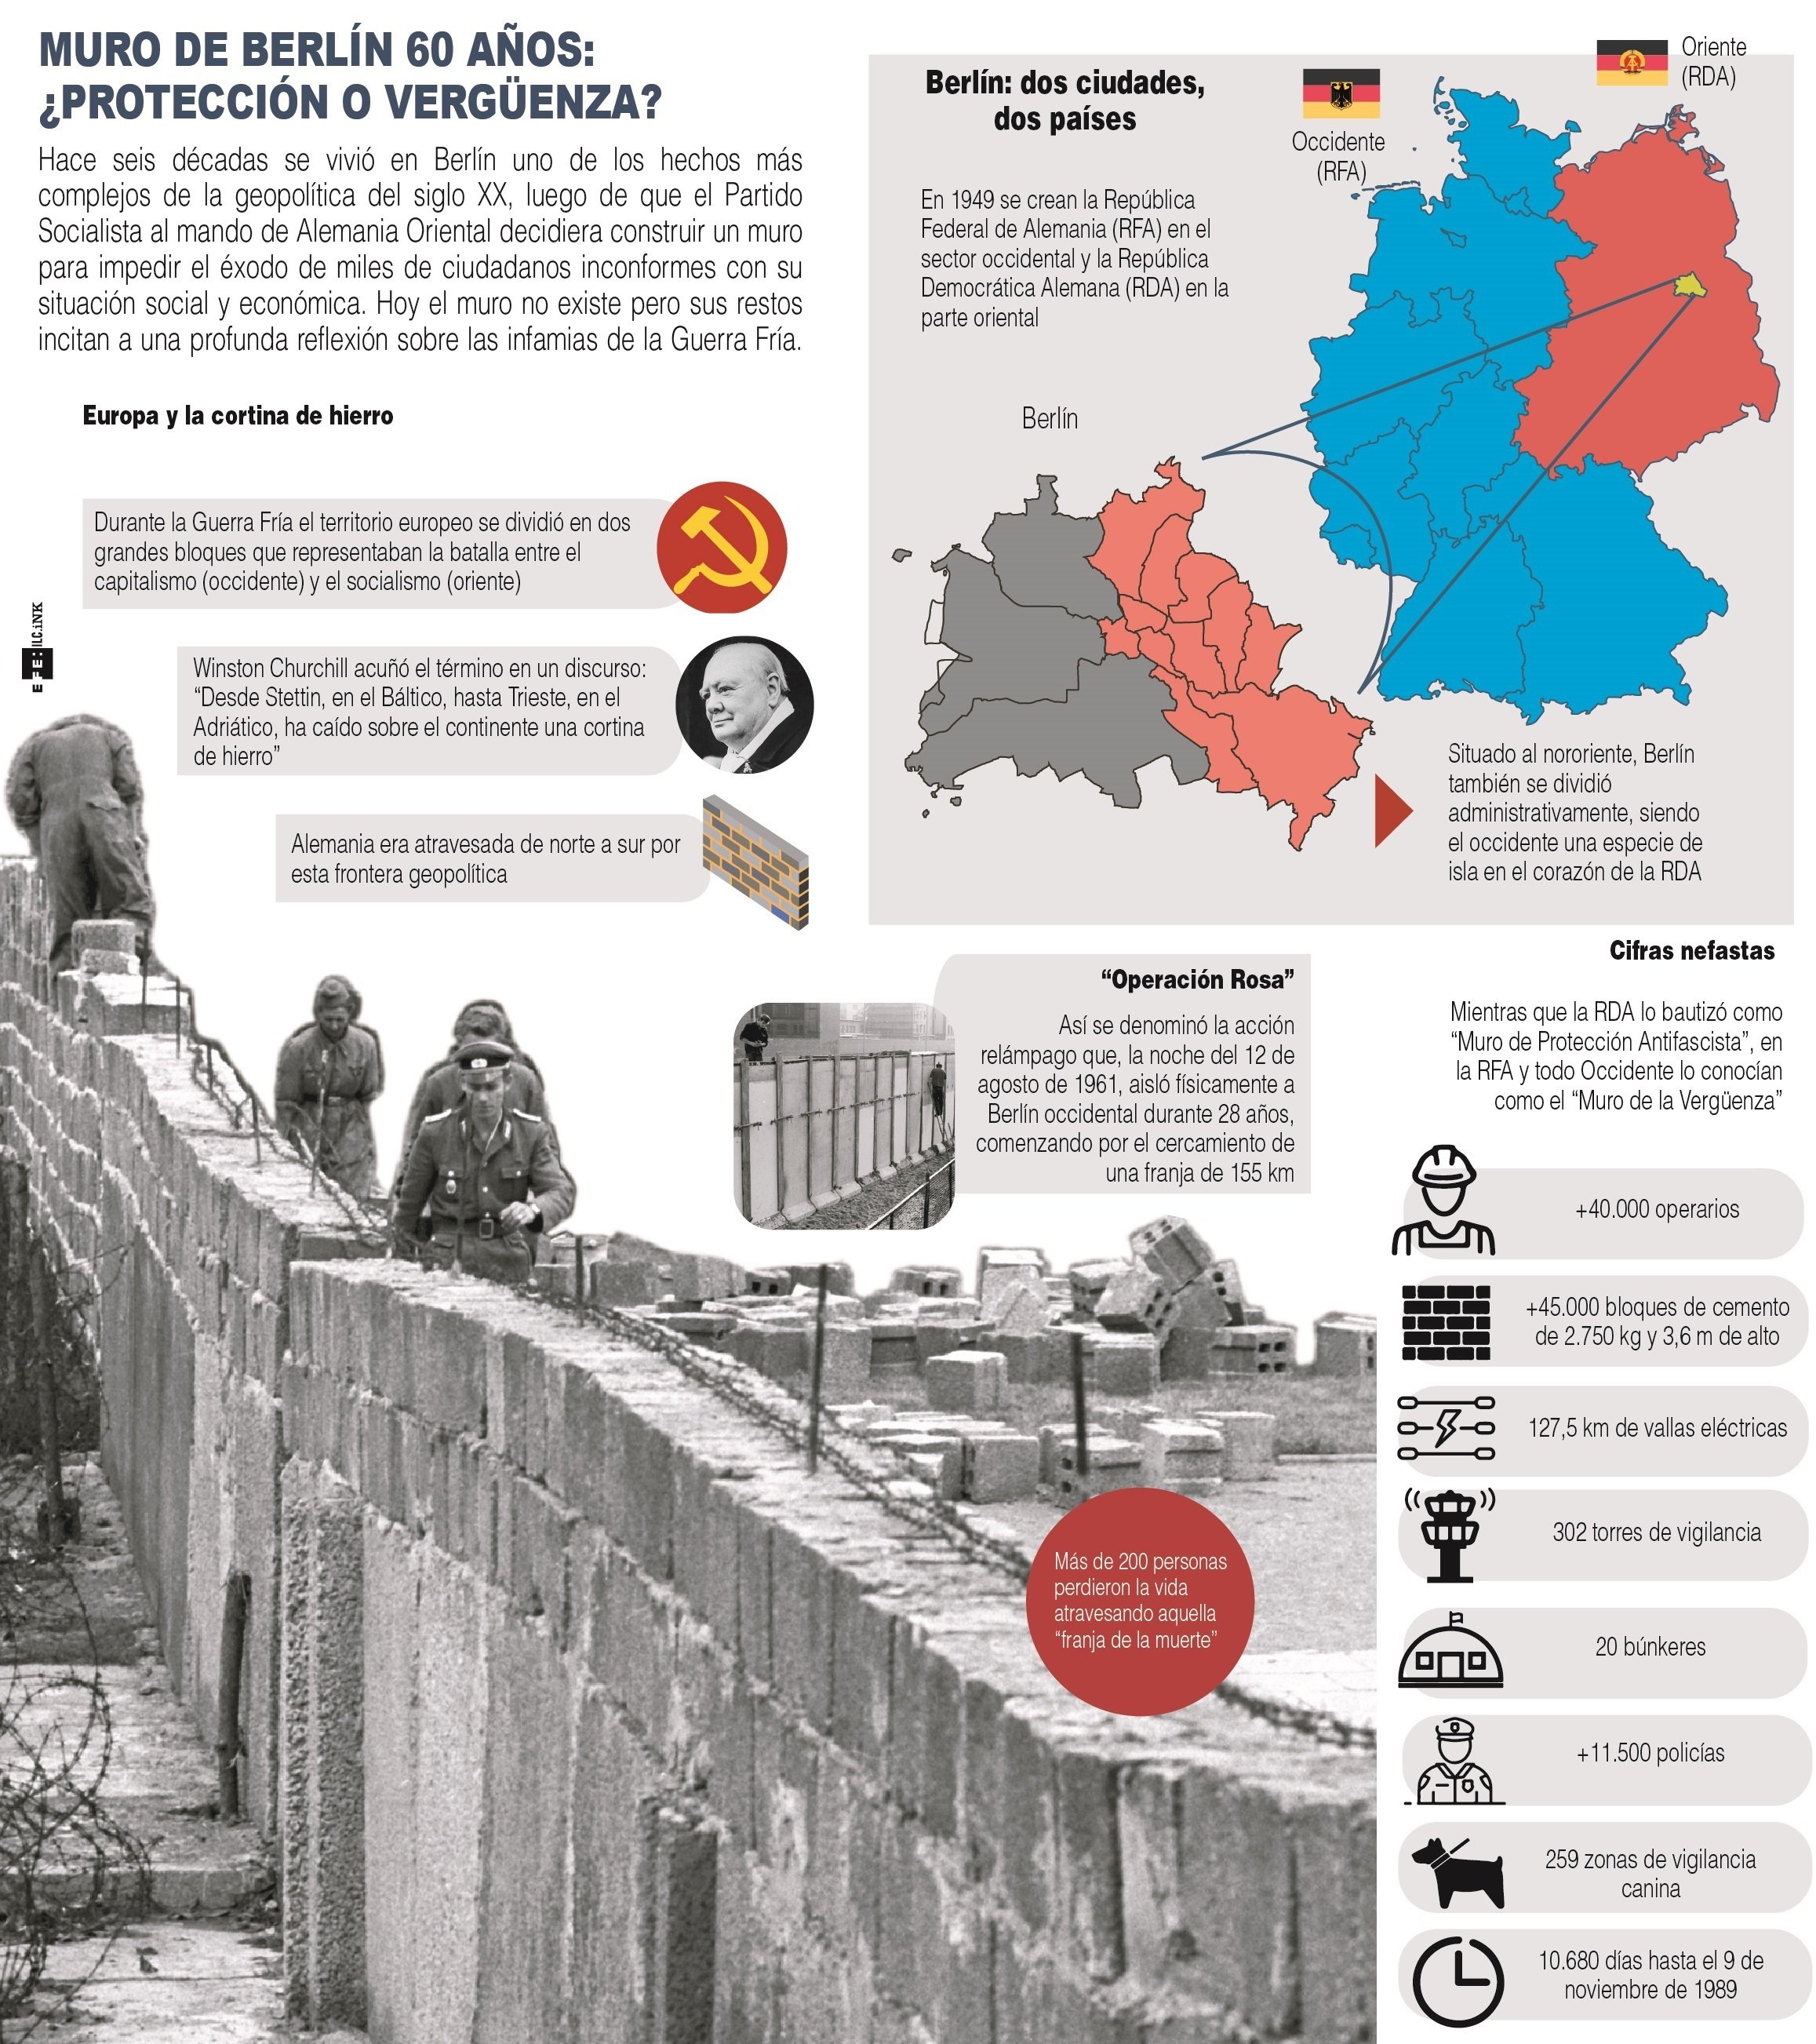 Muro de Berlín 60 años: ¿protección o vergüenza?